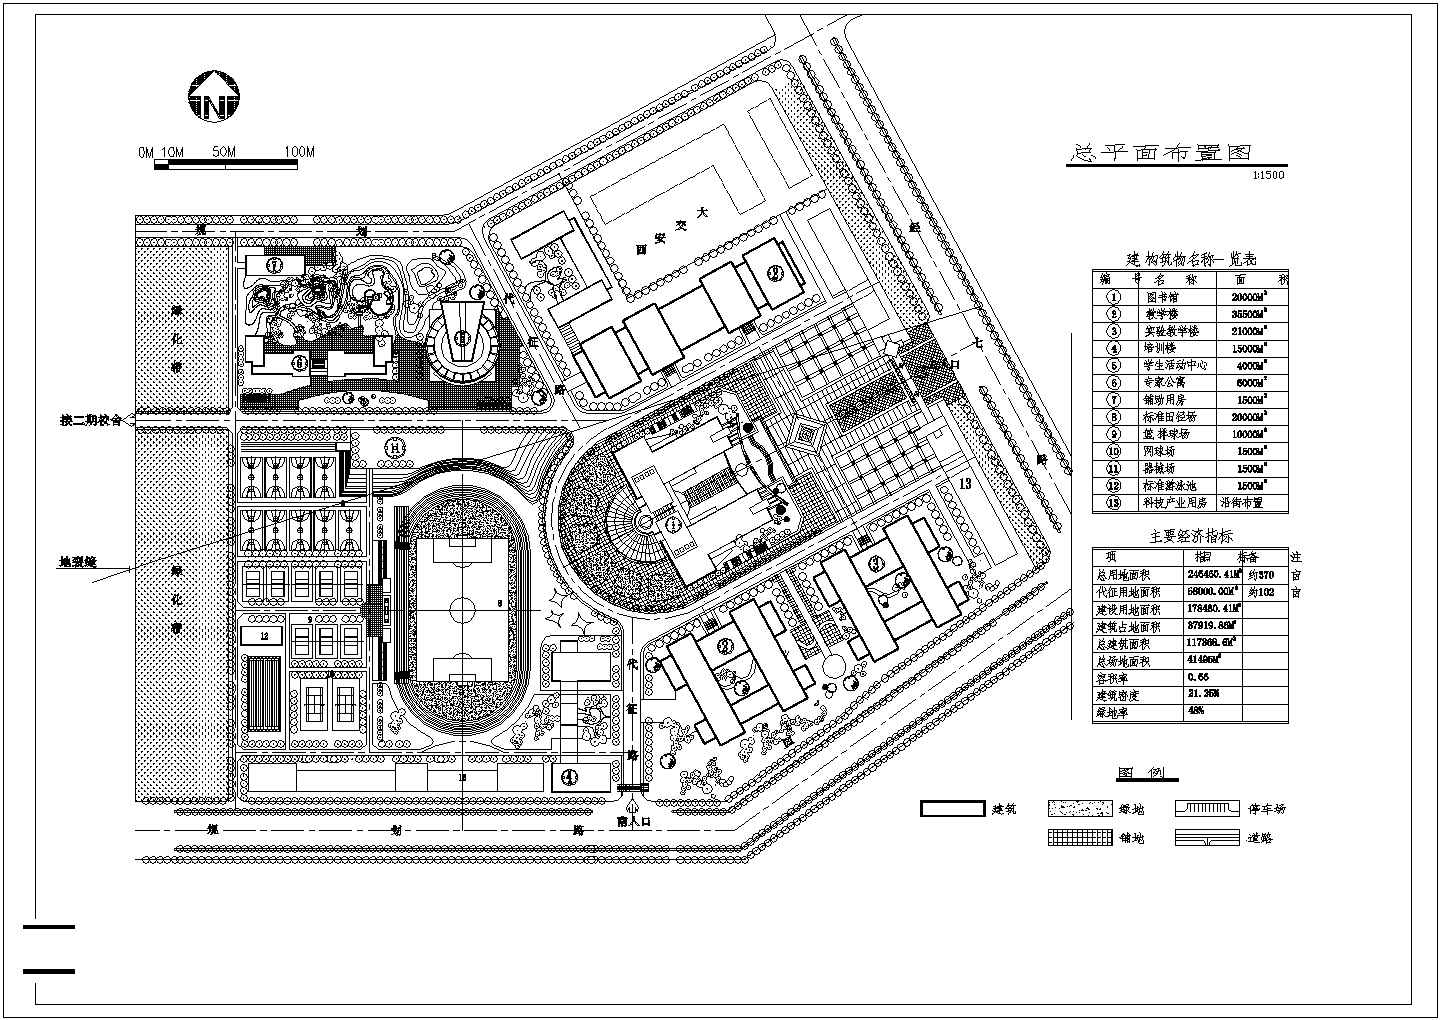 上海某大学CAD建筑设计总体规划方案图